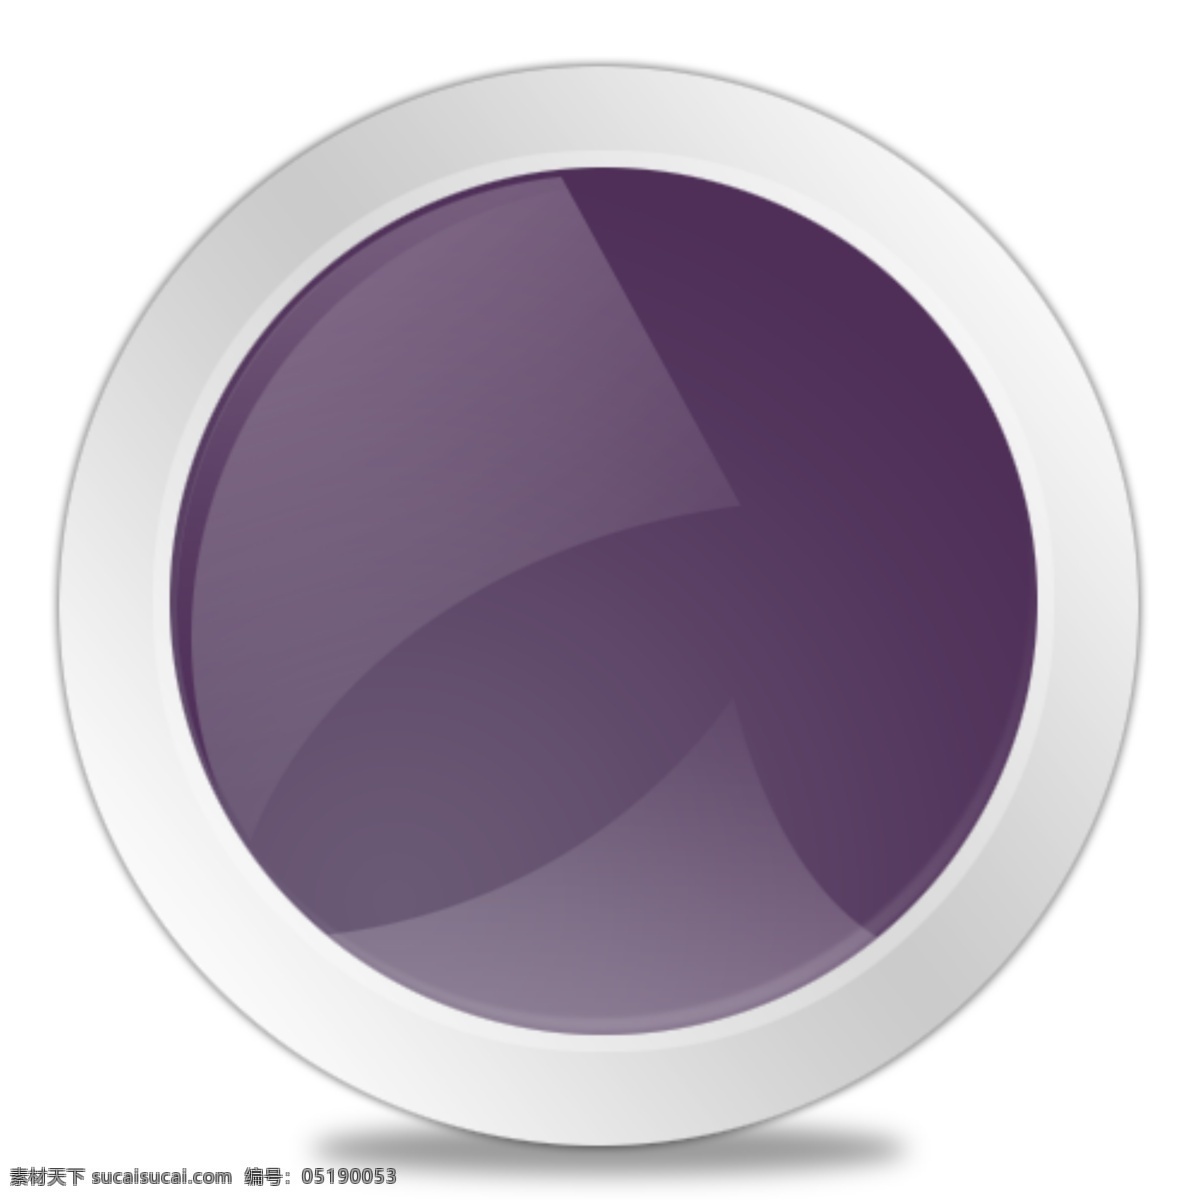 种 颜色 质感 圆形 图标 icon 按钮 圆形图标 网页素材 其他网页素材